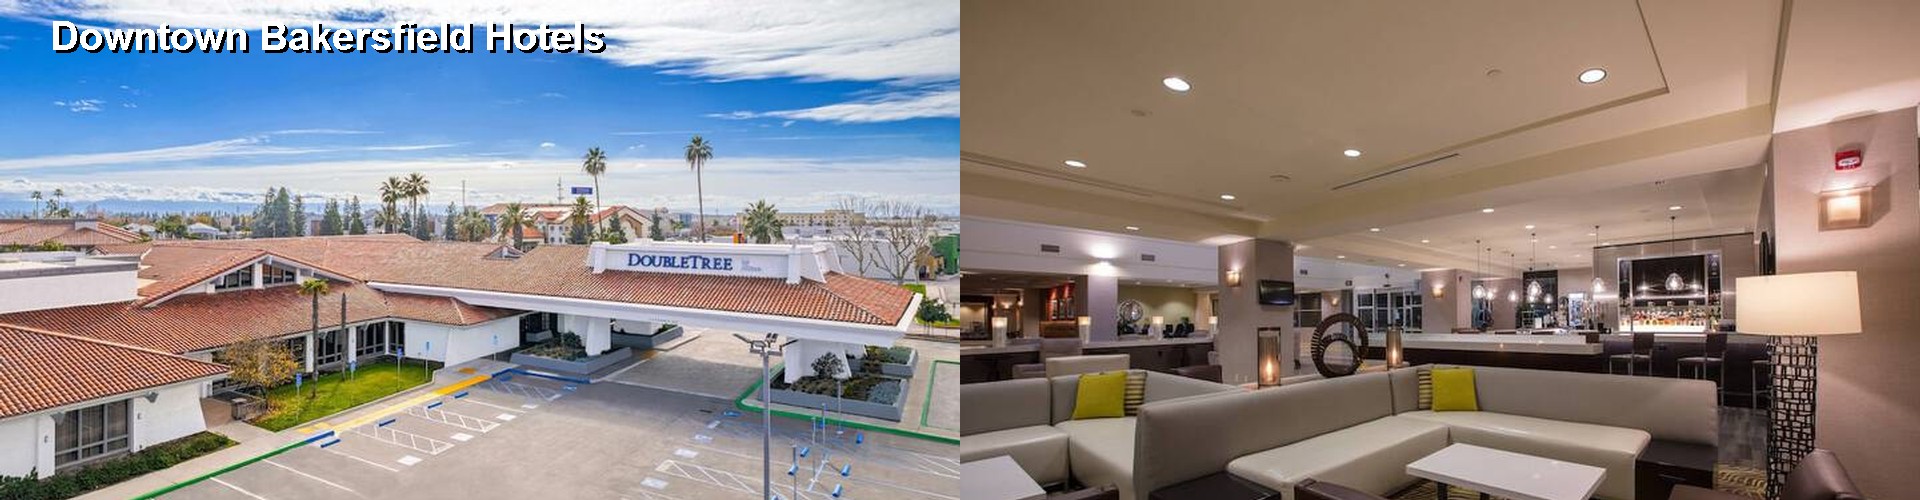 5 Best Hotels near Downtown Bakersfield